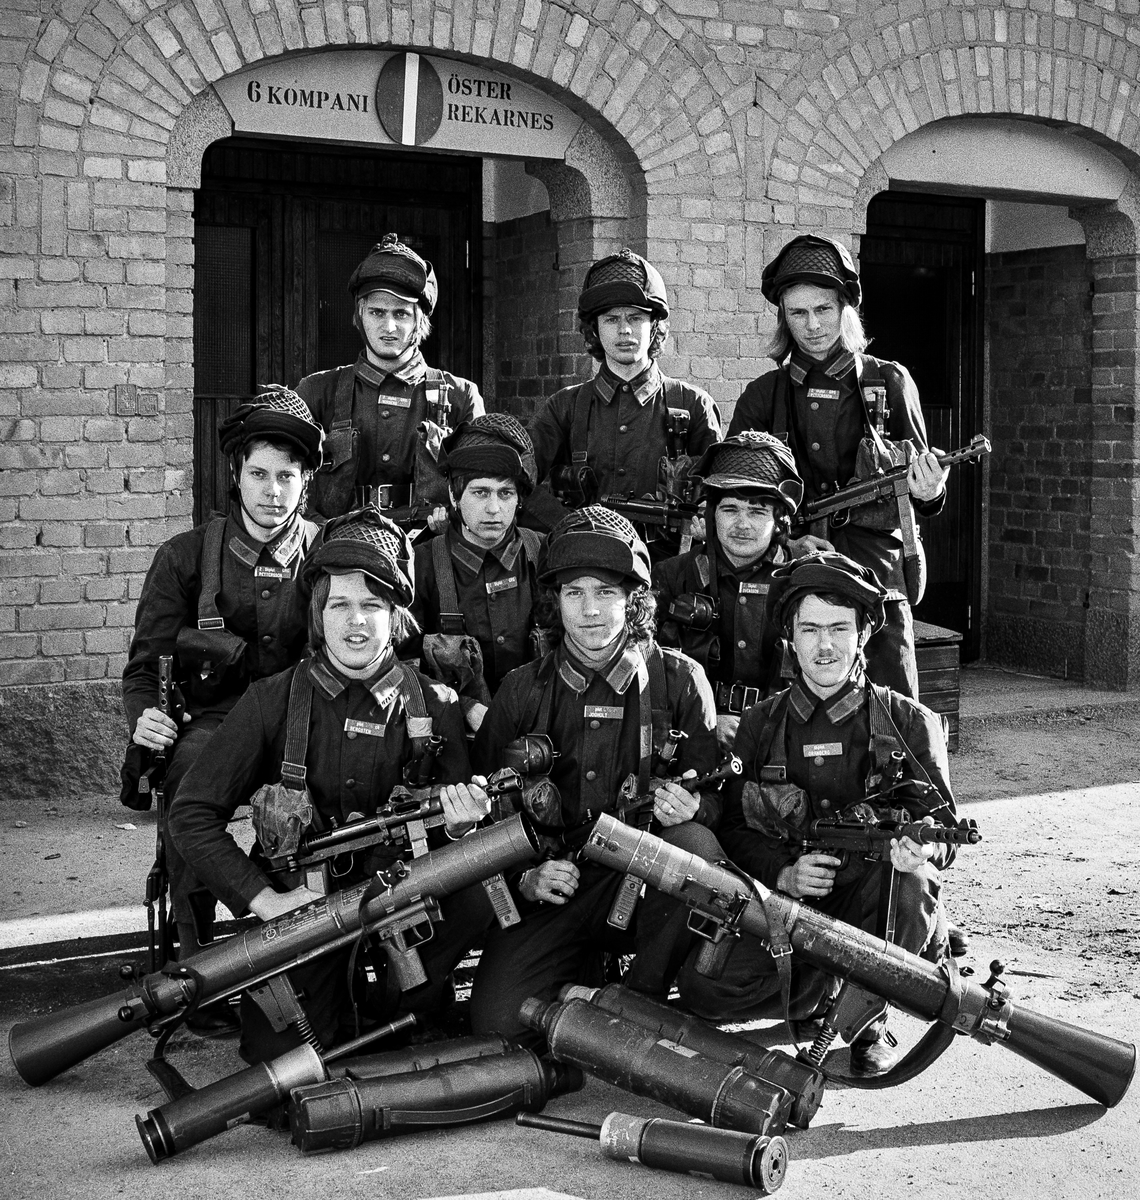 Granatgevärsgruppen vid 2. skyttepluton på Öster Rekarne kompani 1978 framför förläggningen i kasern 5.
Plutonchef var fänrik Pär "Pysch" Andersson och stf fanjunkare Esbjörn Sahlén.

OBS! två bilder.